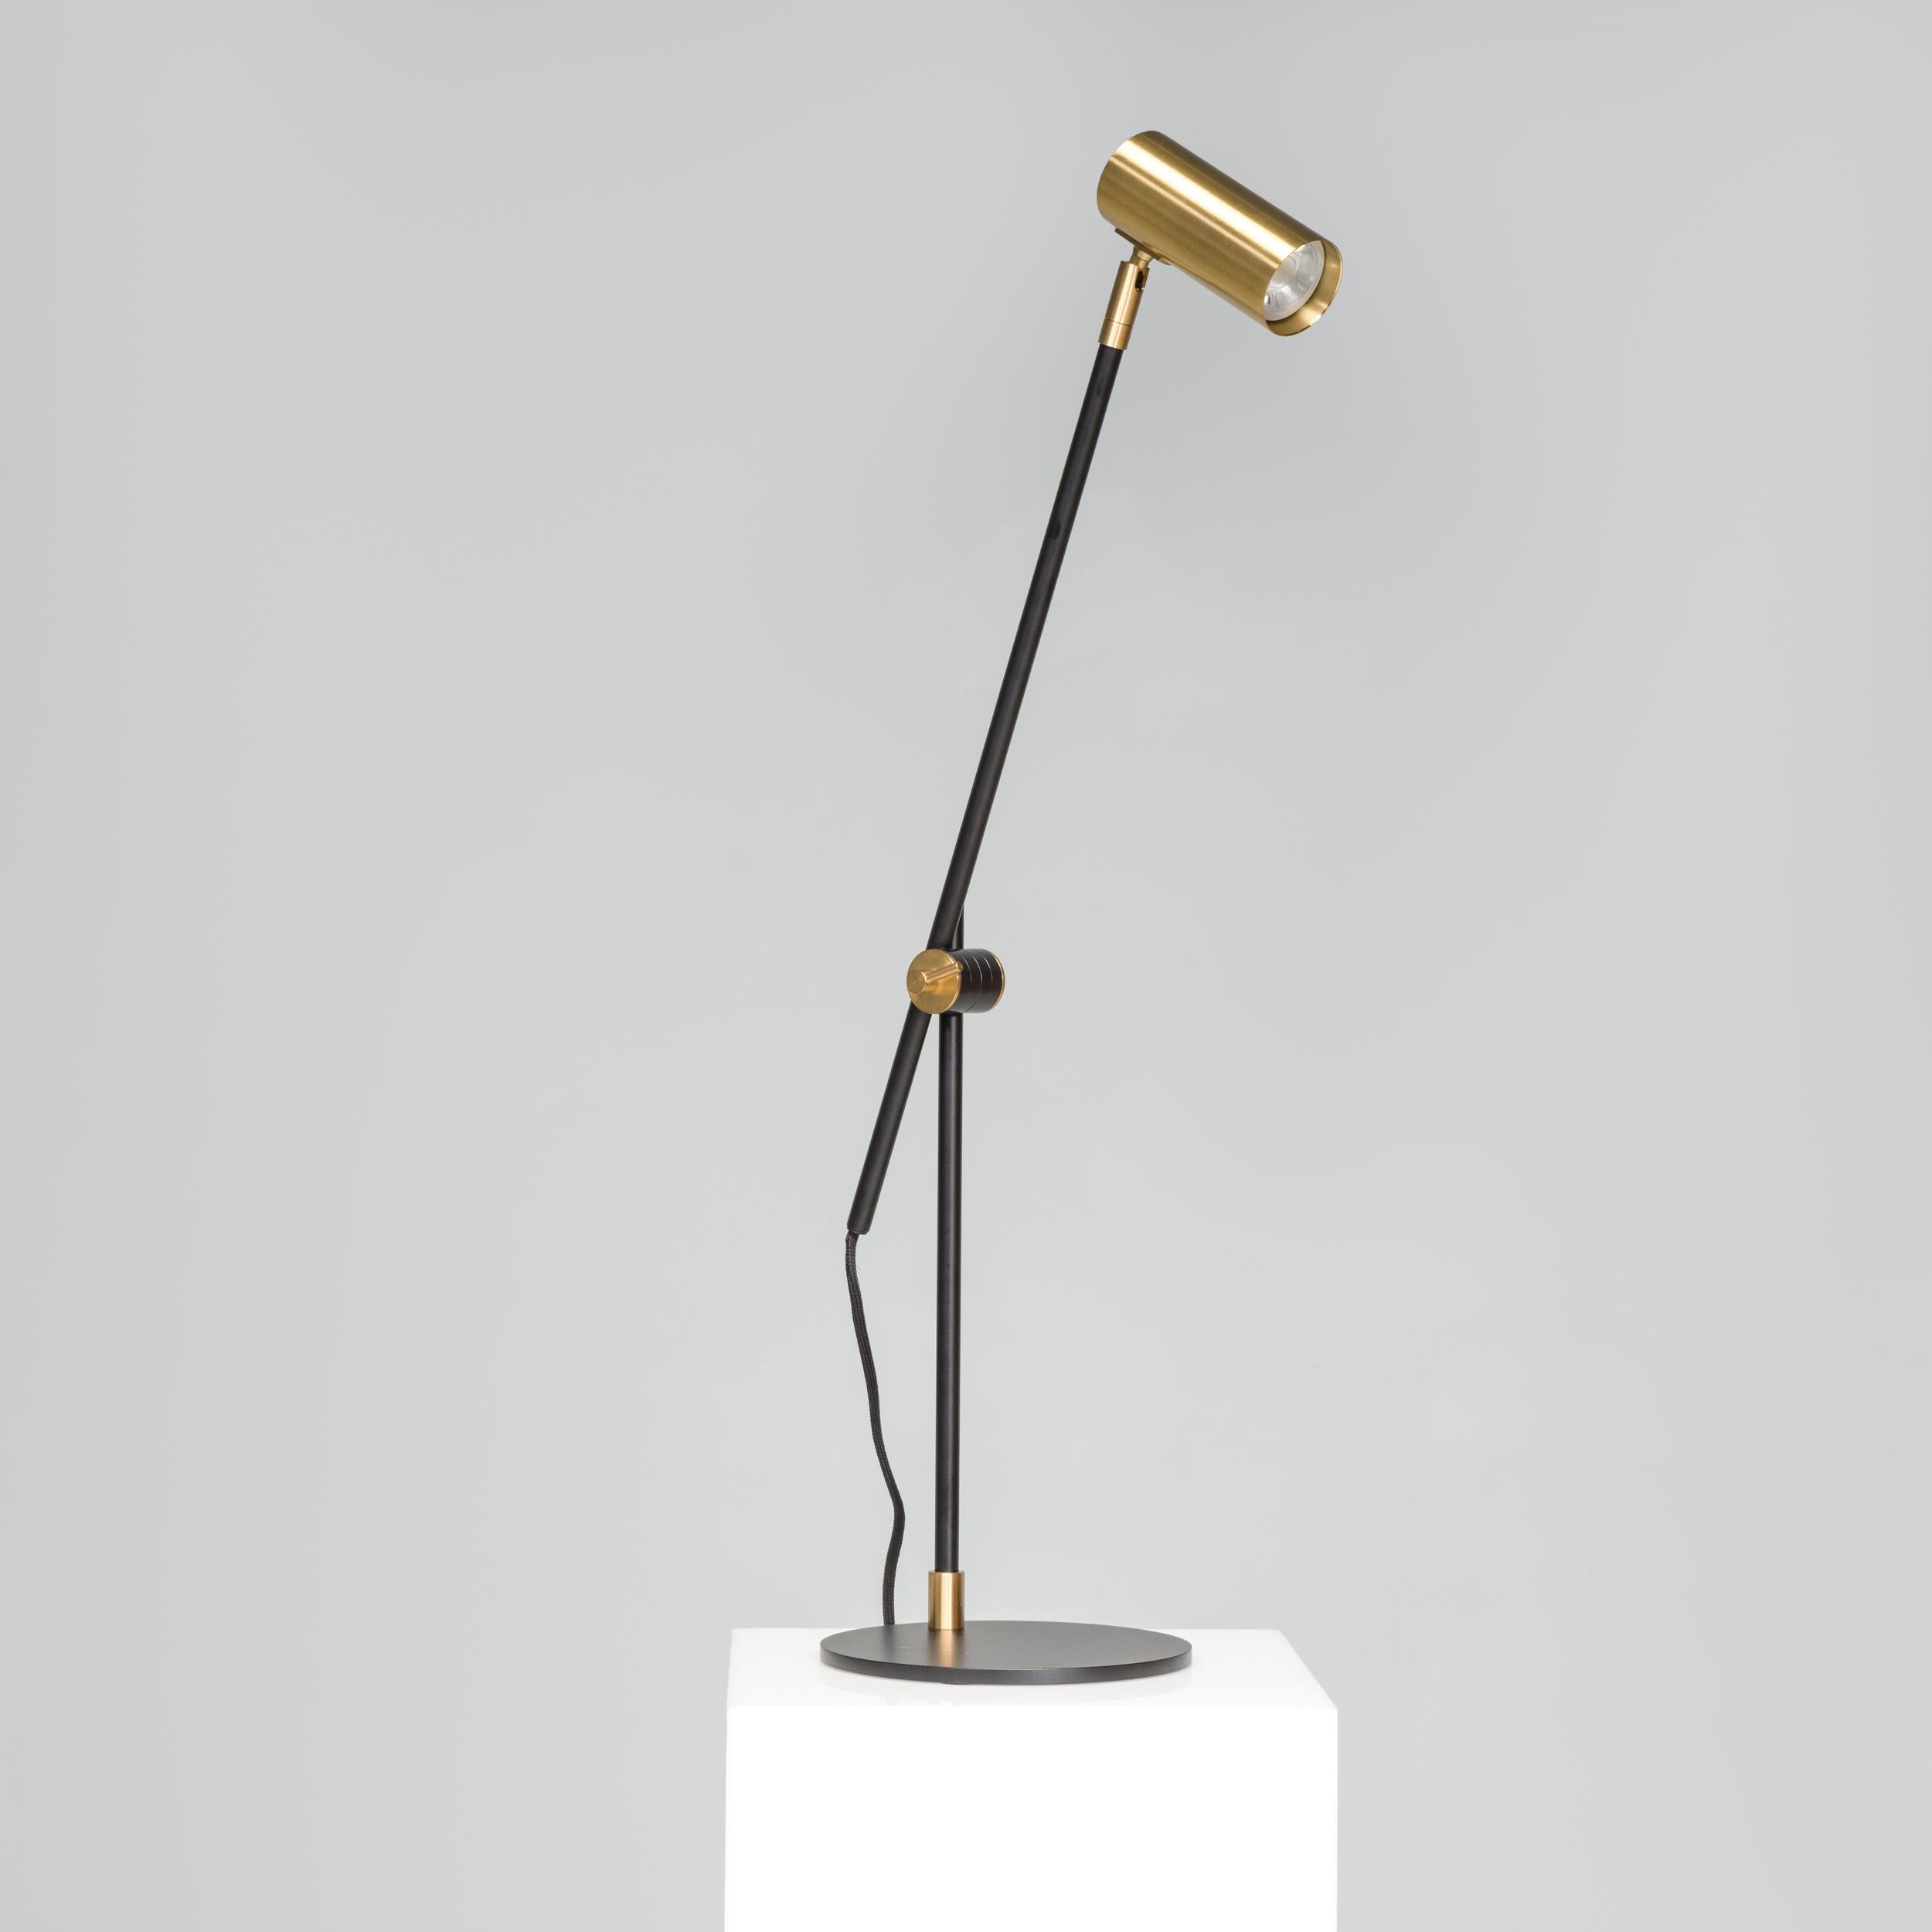 Designée par Niclas Hoflin, la lampe de bureau Lektor est dotée d'un socle en fer plat et circulaire qui offre une forme pratique et contrastante par rapport au reste du design de la lampe. La structure épurée et élégante est construite en laiton